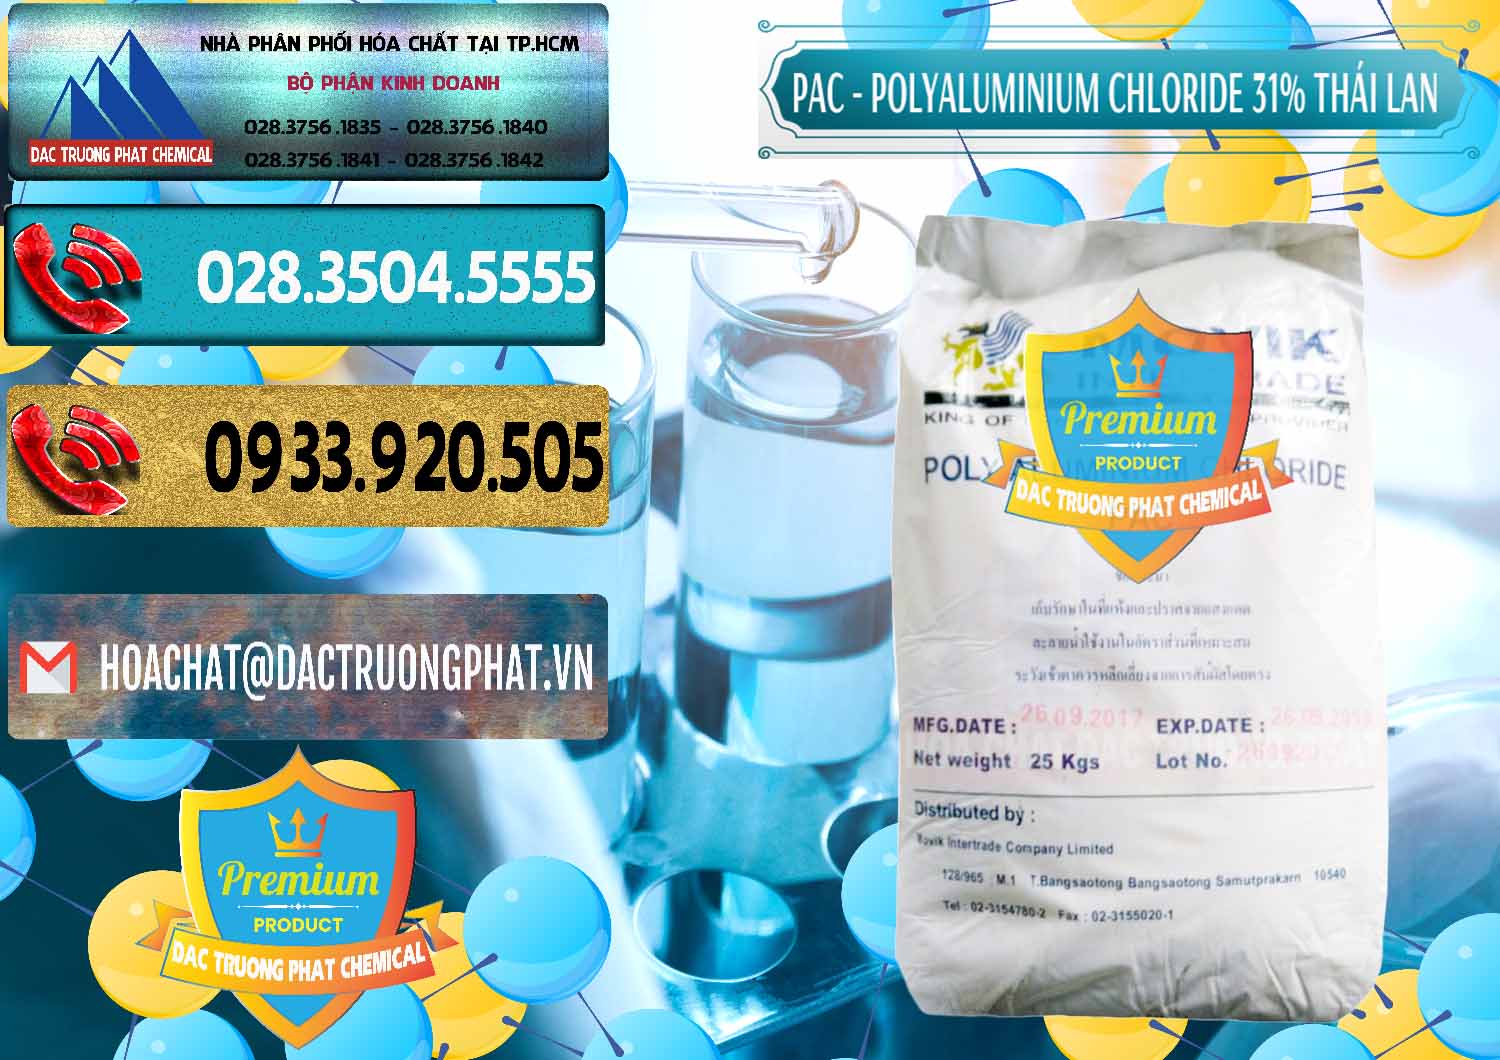 Công ty bán - phân phối PAC - Polyaluminium Chloride 31% Thái Lan Thailand - 0469 - Cty cung cấp và kinh doanh hóa chất tại TP.HCM - hoachatdetnhuom.com